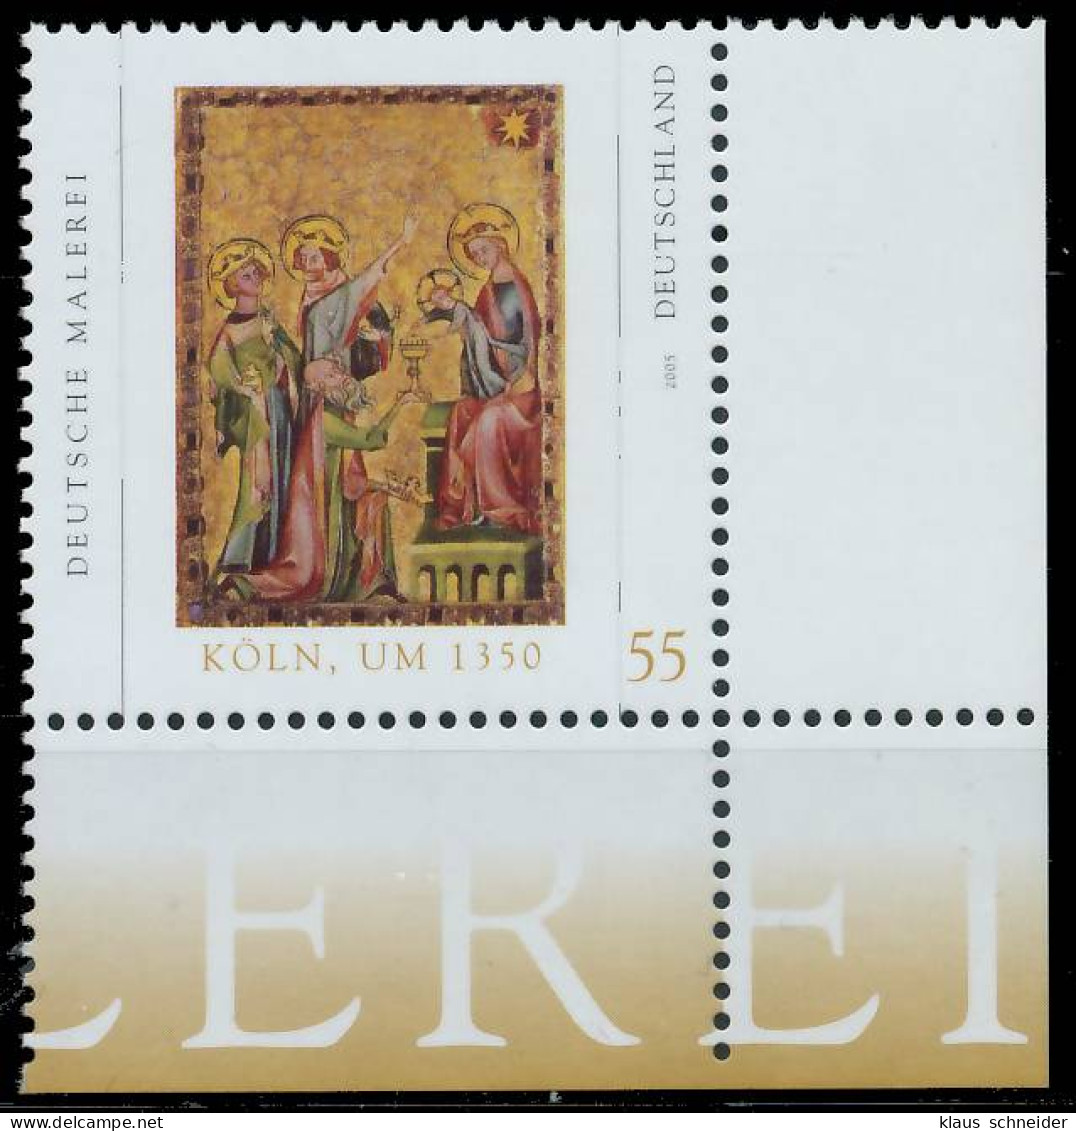 BRD BUND 2005 Nr 2437 Postfrisch ECKE-URE X397FB6 - Unused Stamps